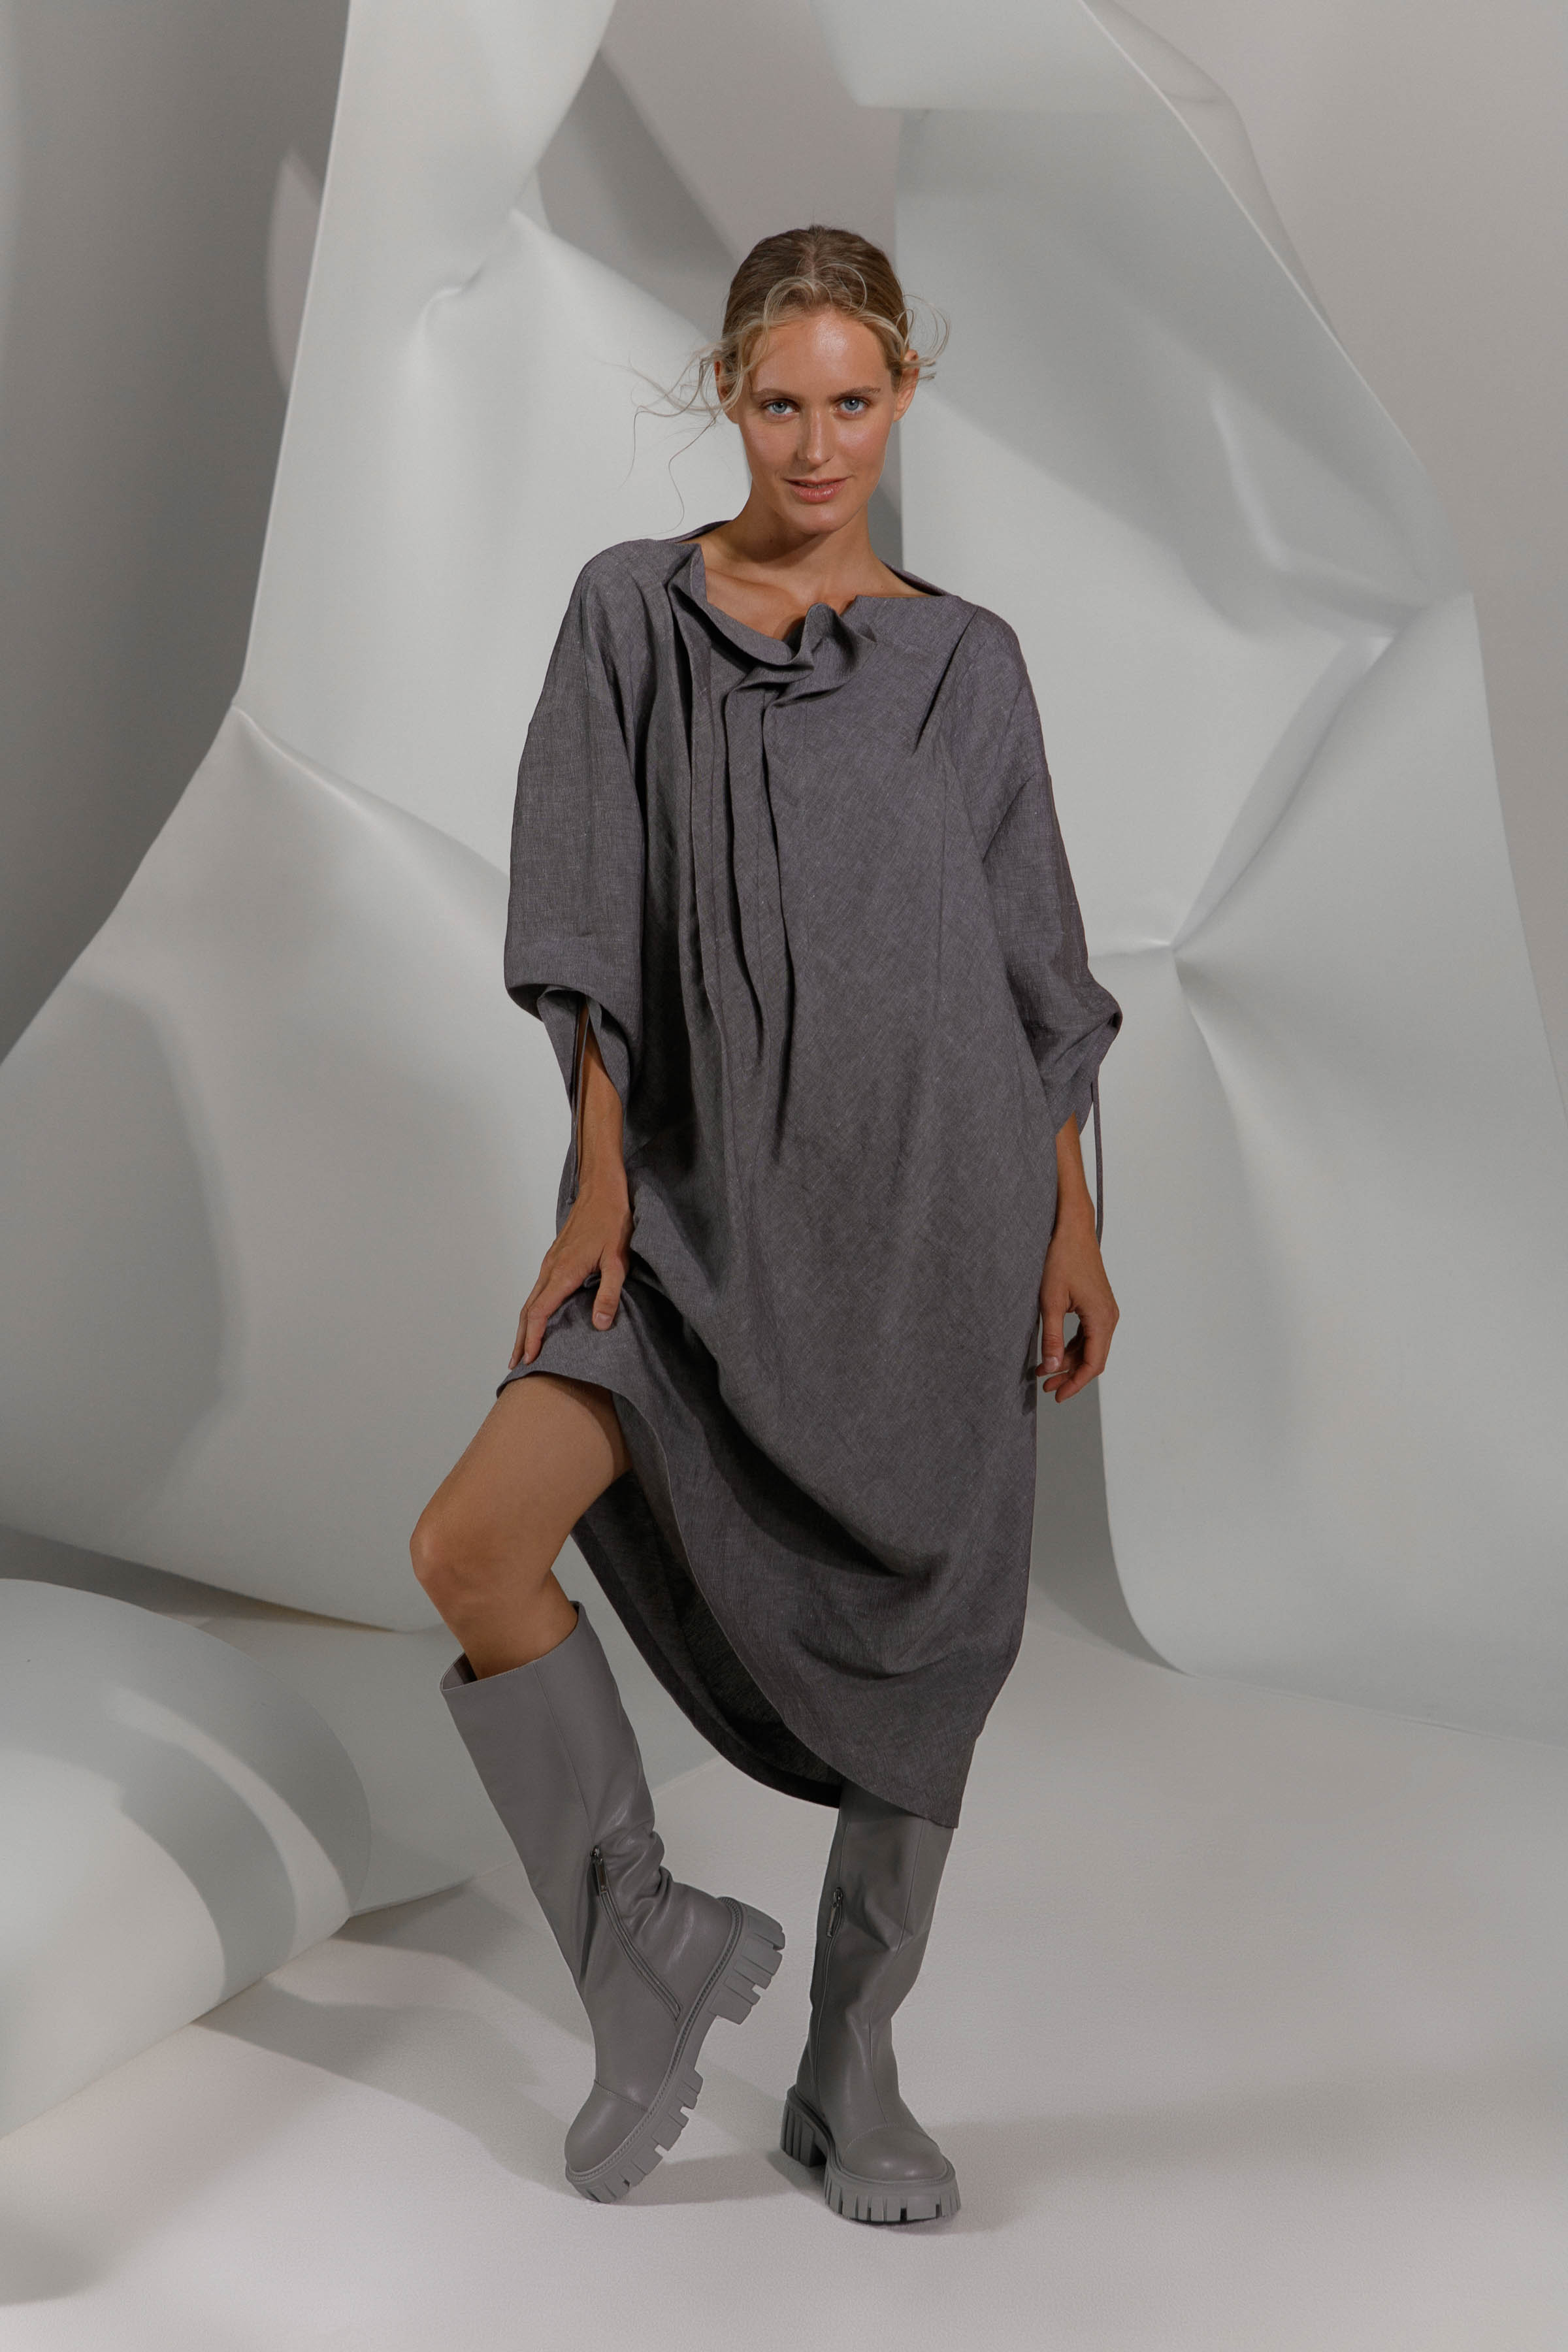 Платье с асимметричными складками, лён 15 Серый меланж (melange gris) от Lesel (Лесель)! Заказывайте по ✆ 8 (800) 777 02 37